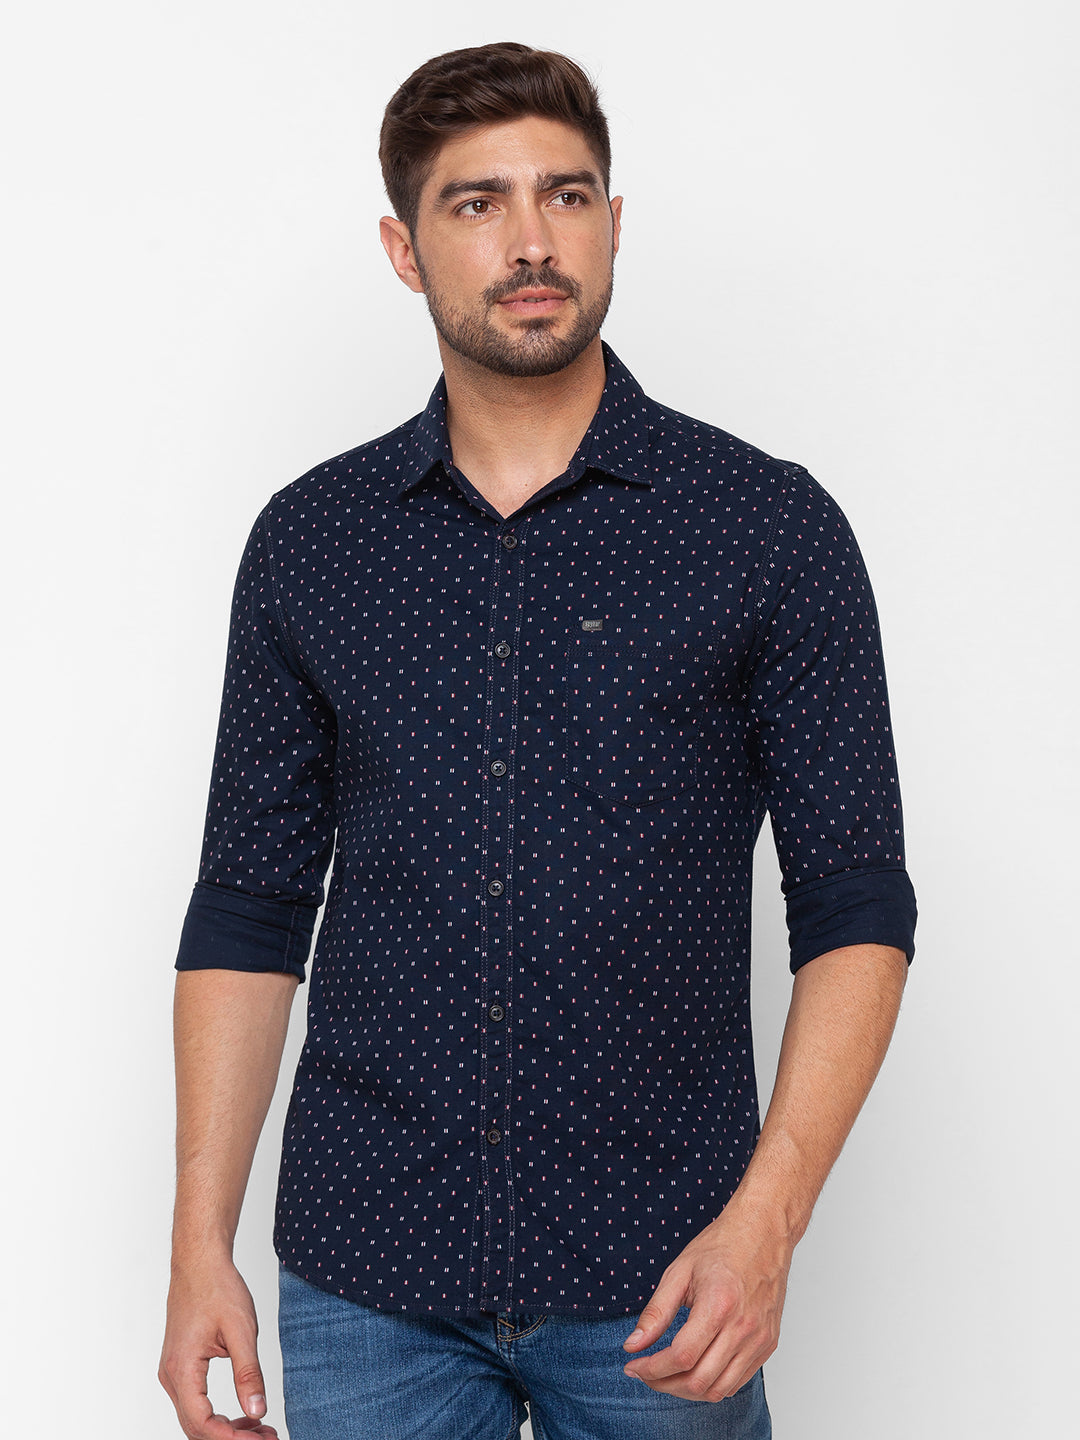 Spykar Navy Blue Cotton Full Sleeve Printed Shirt For Men